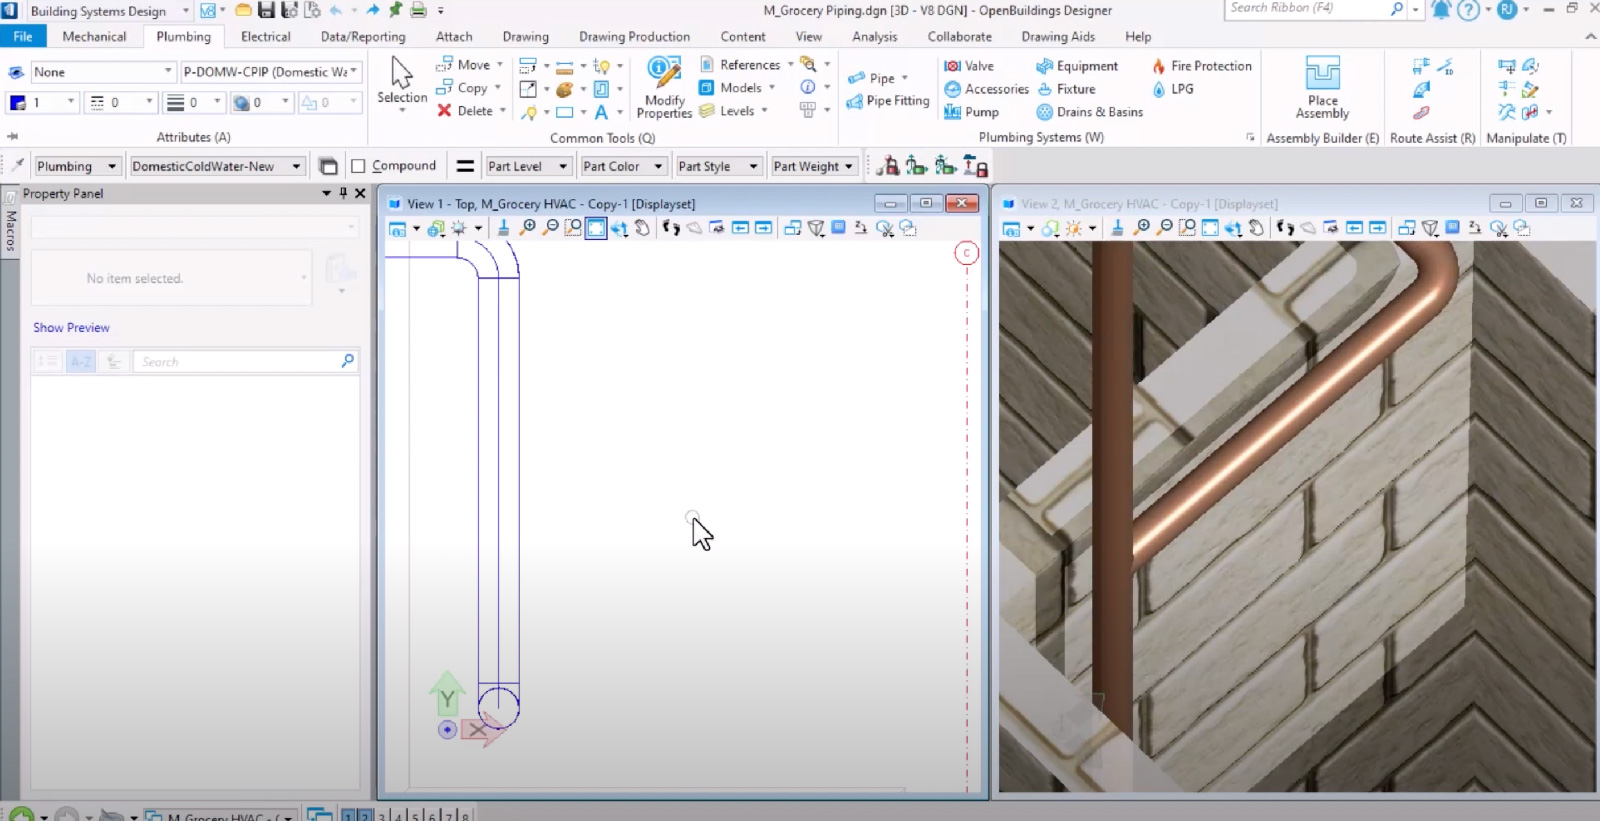 Zrzut ekranu z preferencjami automatycznego dopasowywania instalacji sanitarnych w OpenBuildings Designer